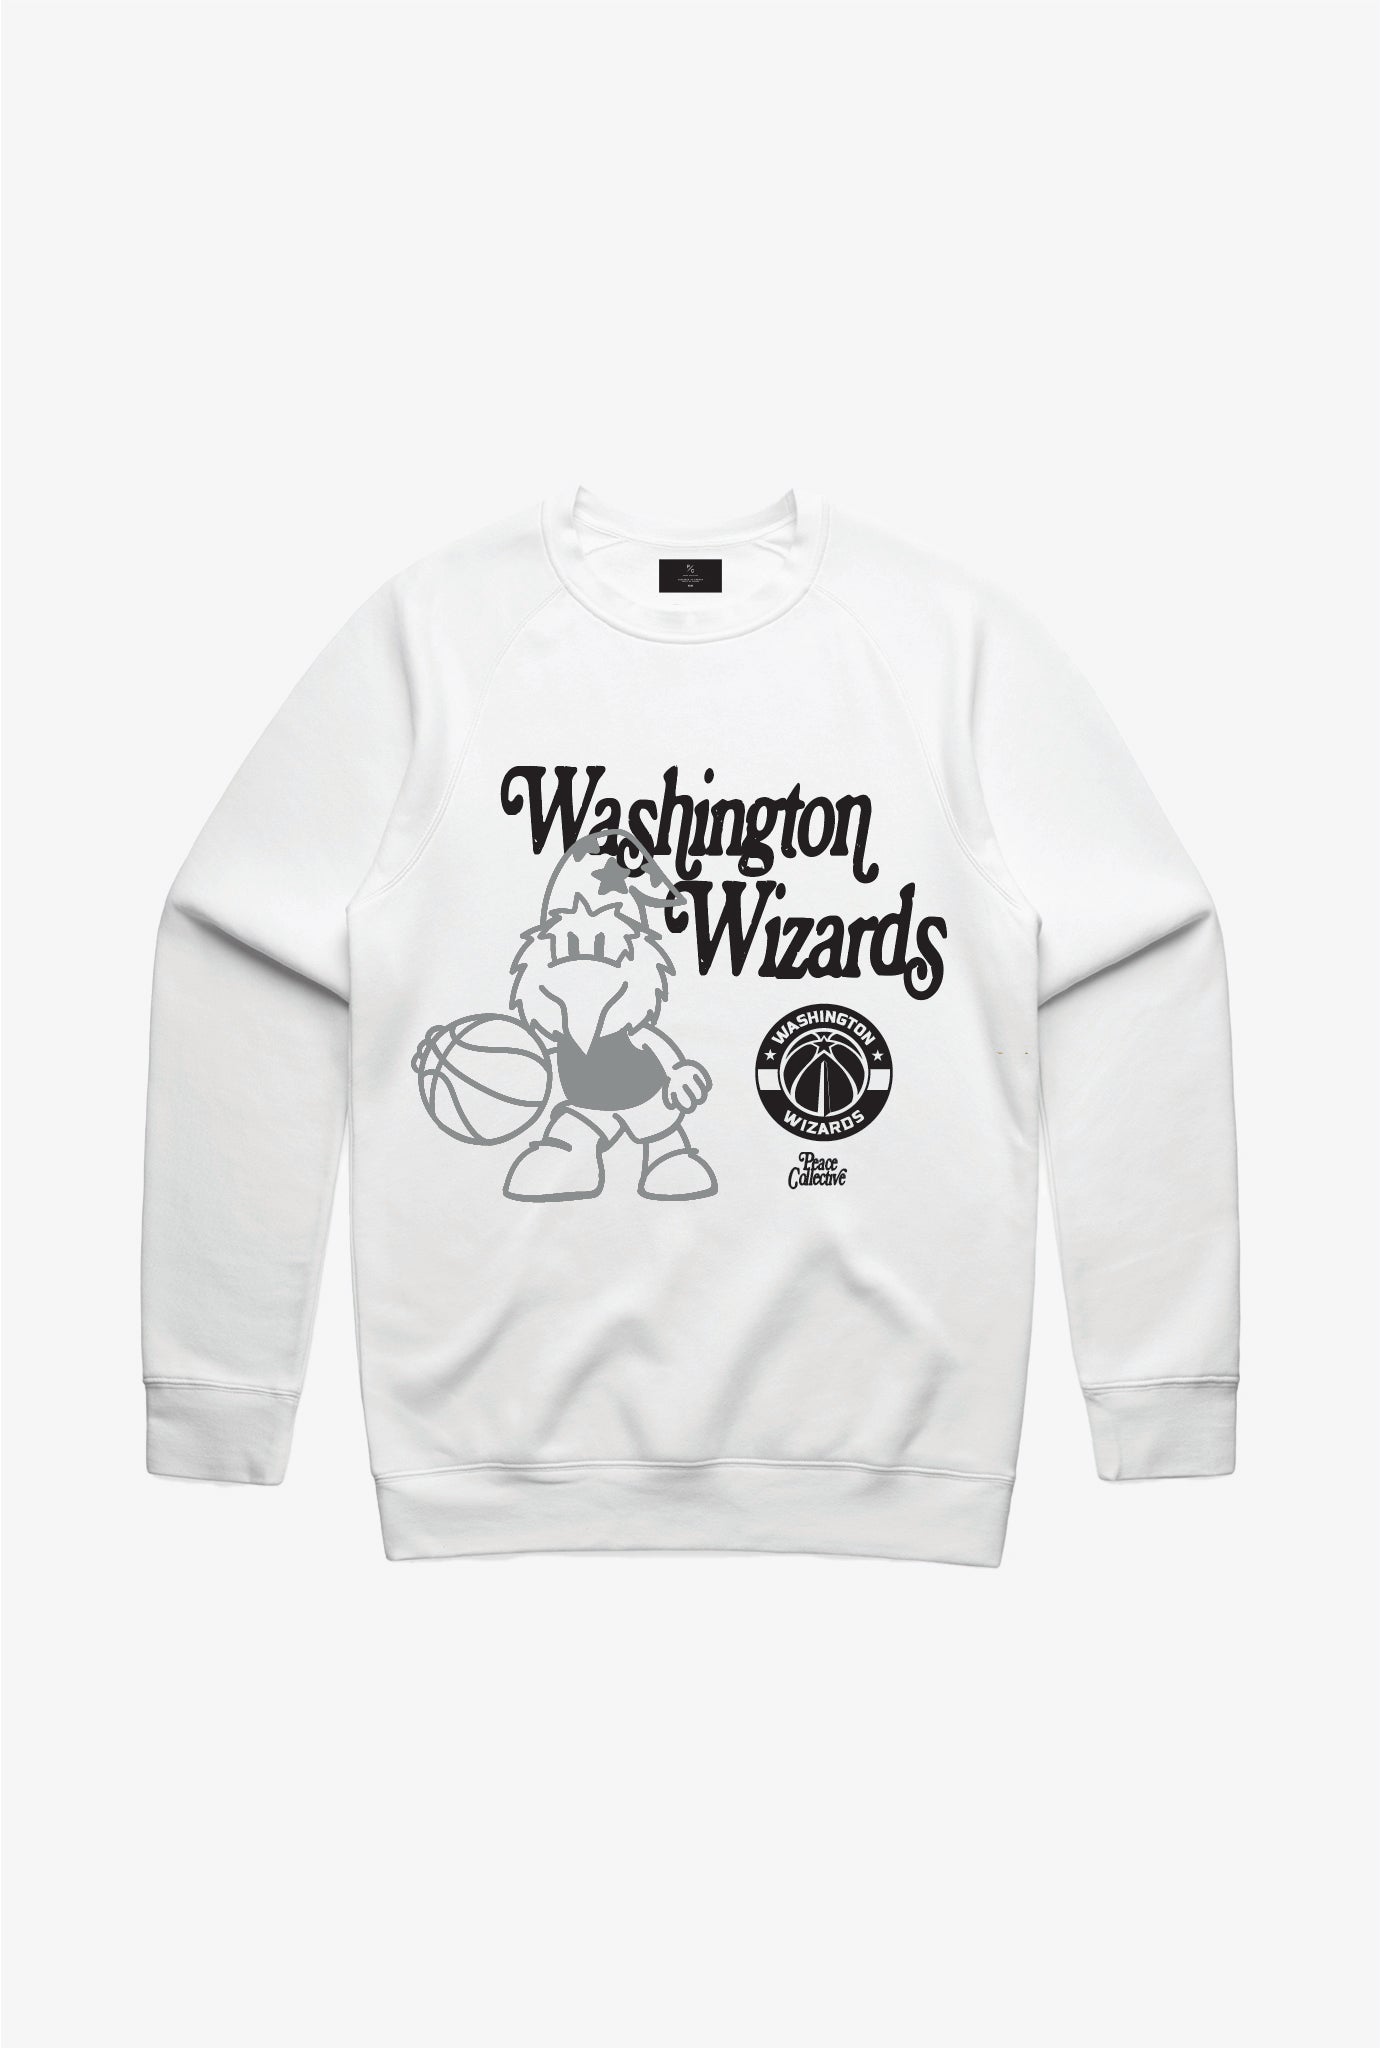 Washington Wizards Mascot Crewneck - White